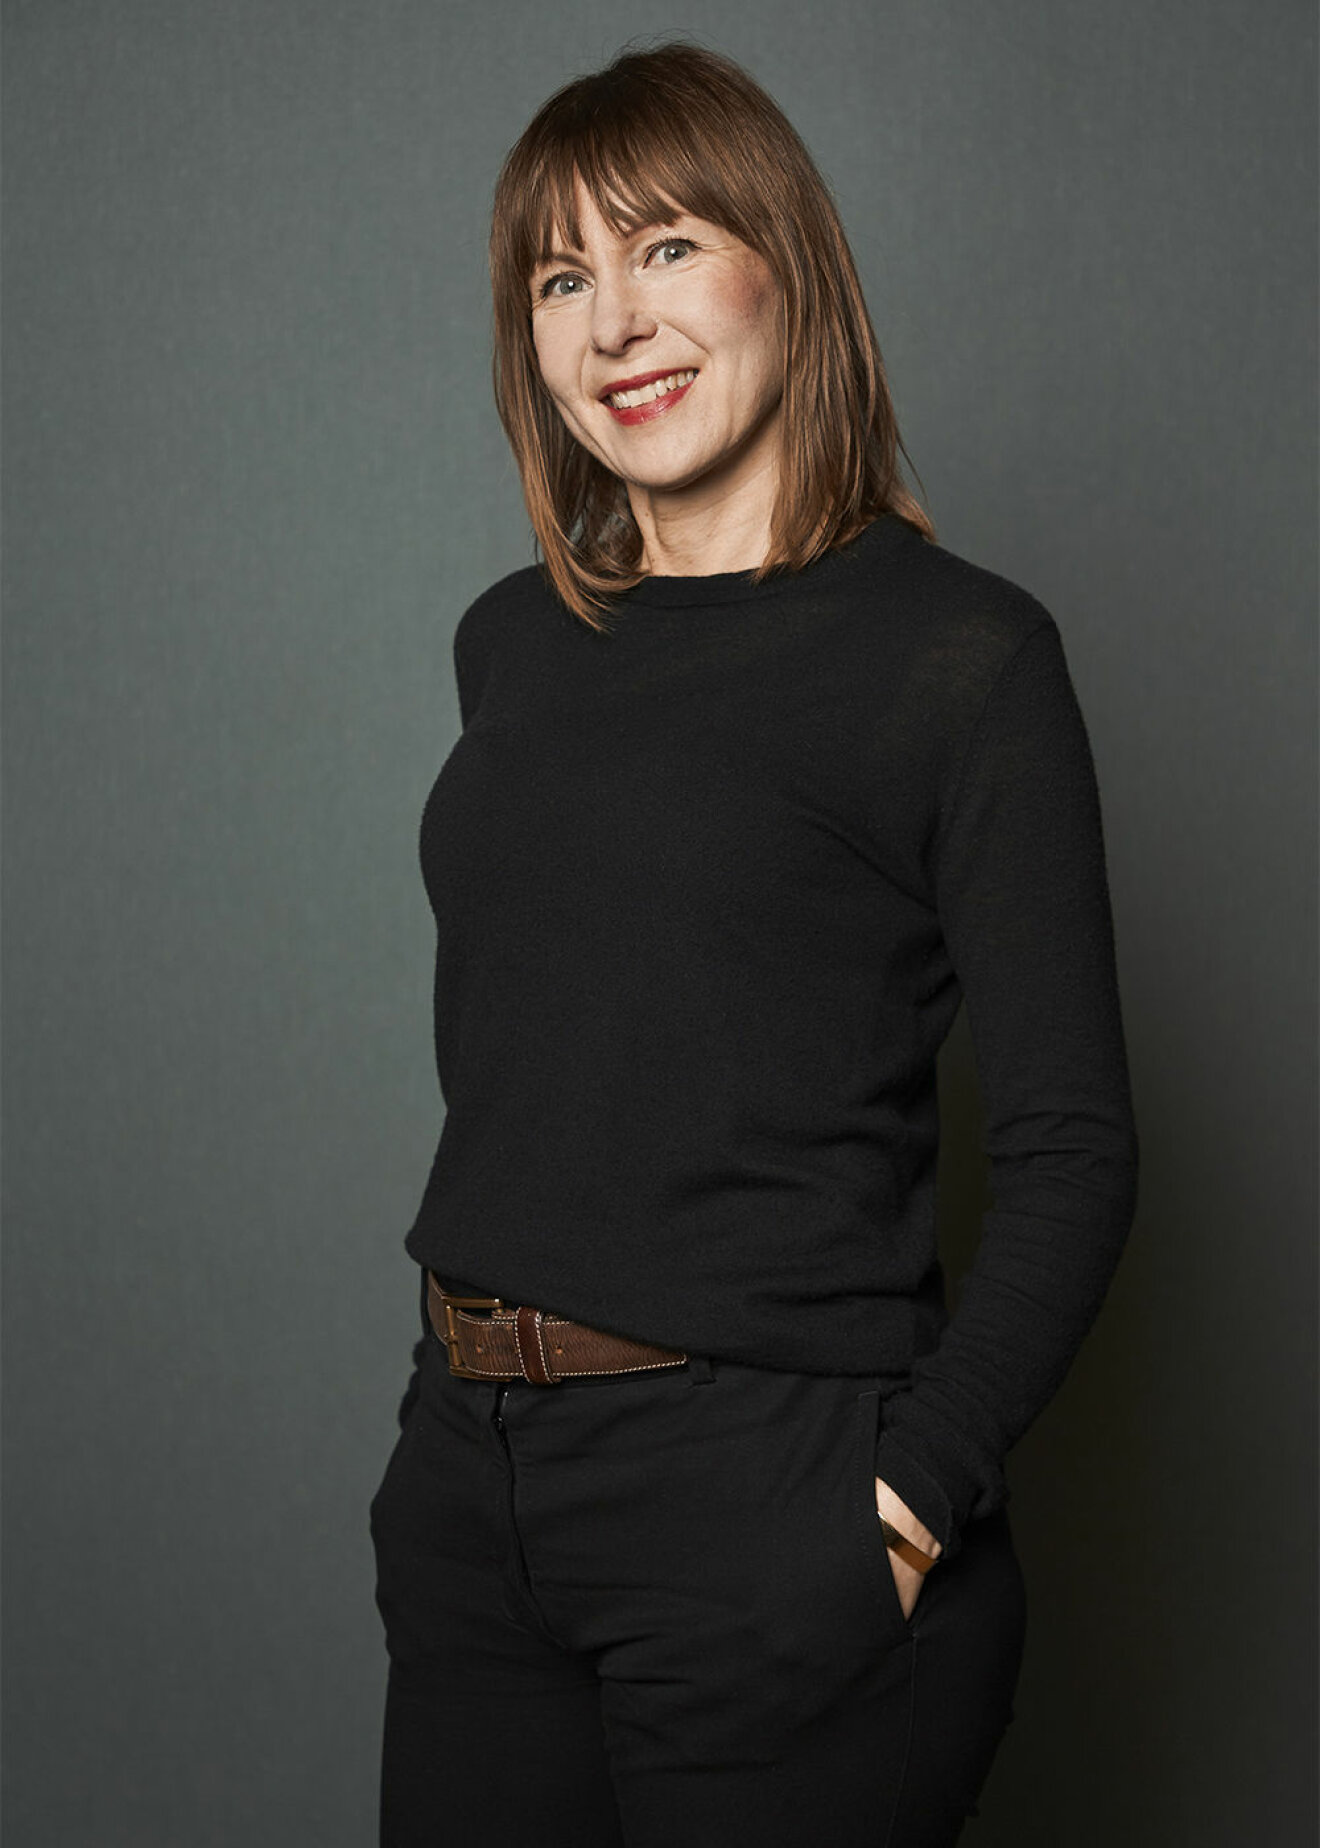 Sissa Sundling, head of design på Boråstapeter